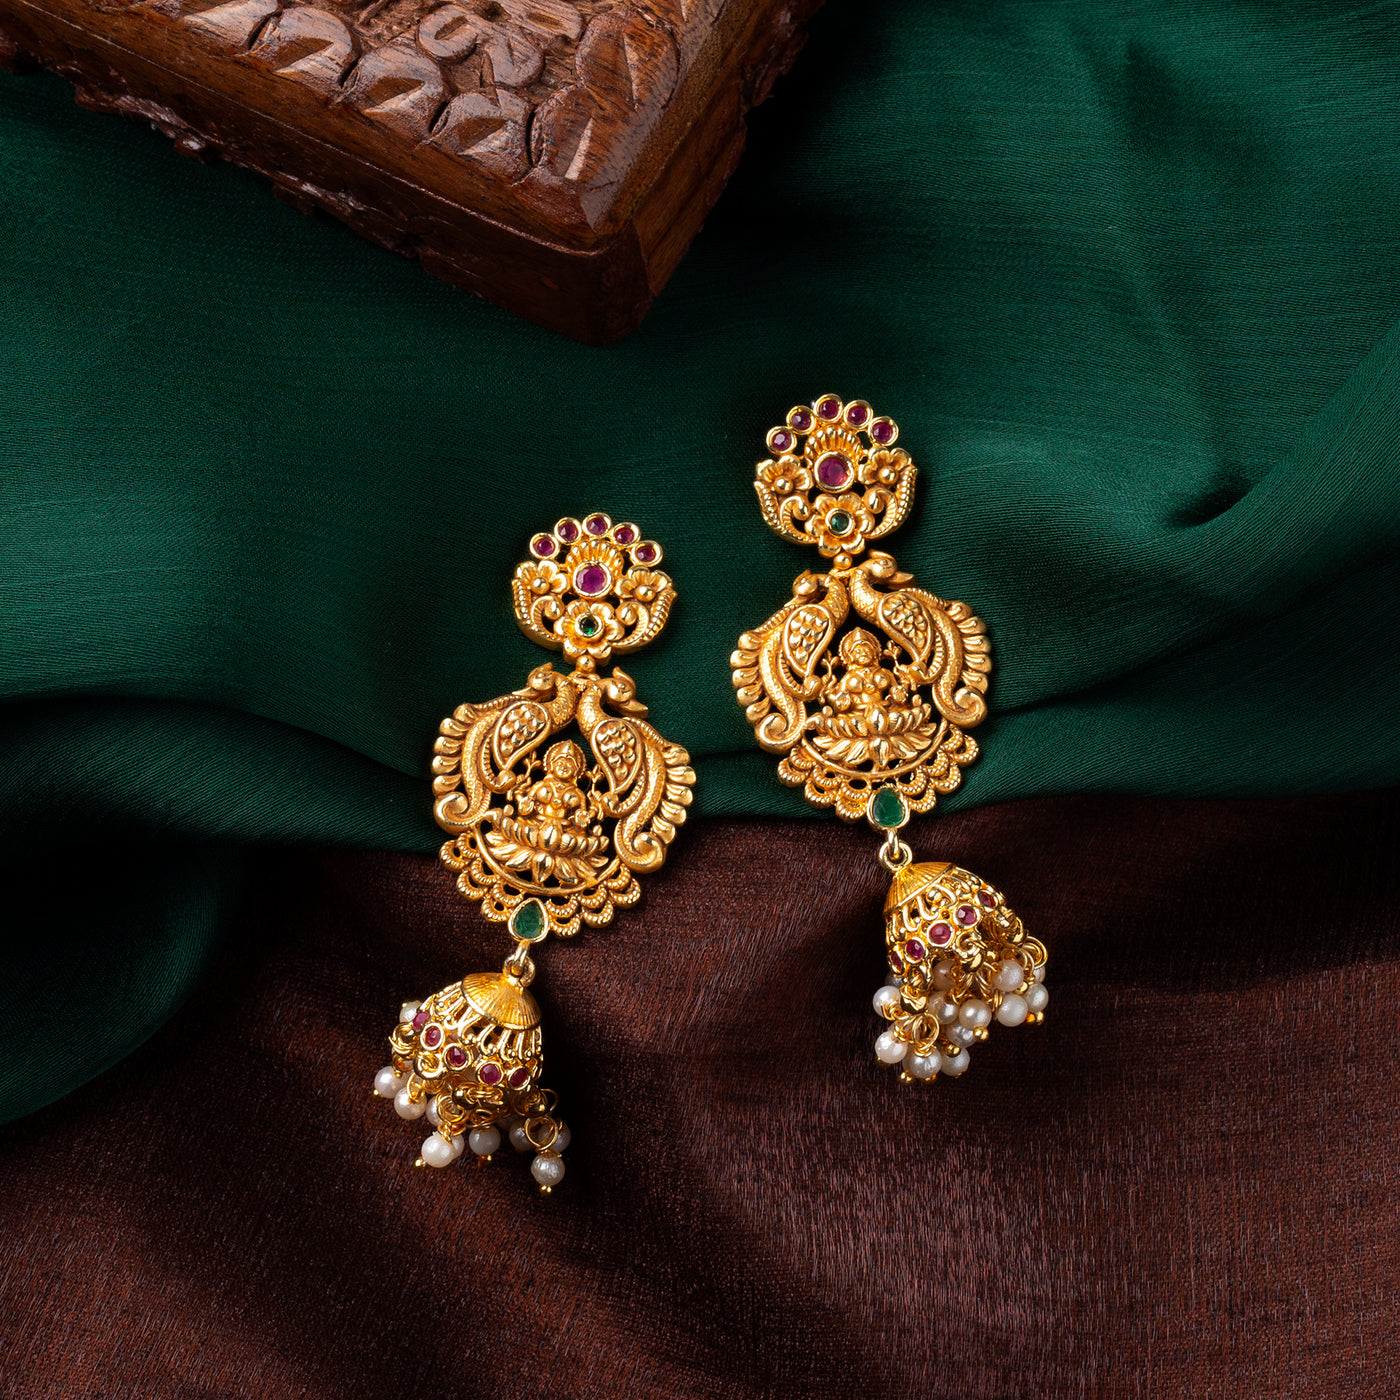 Estele Gold plated Divine Lakshmi Ji Bridal Necklace set with color stones & Pearls